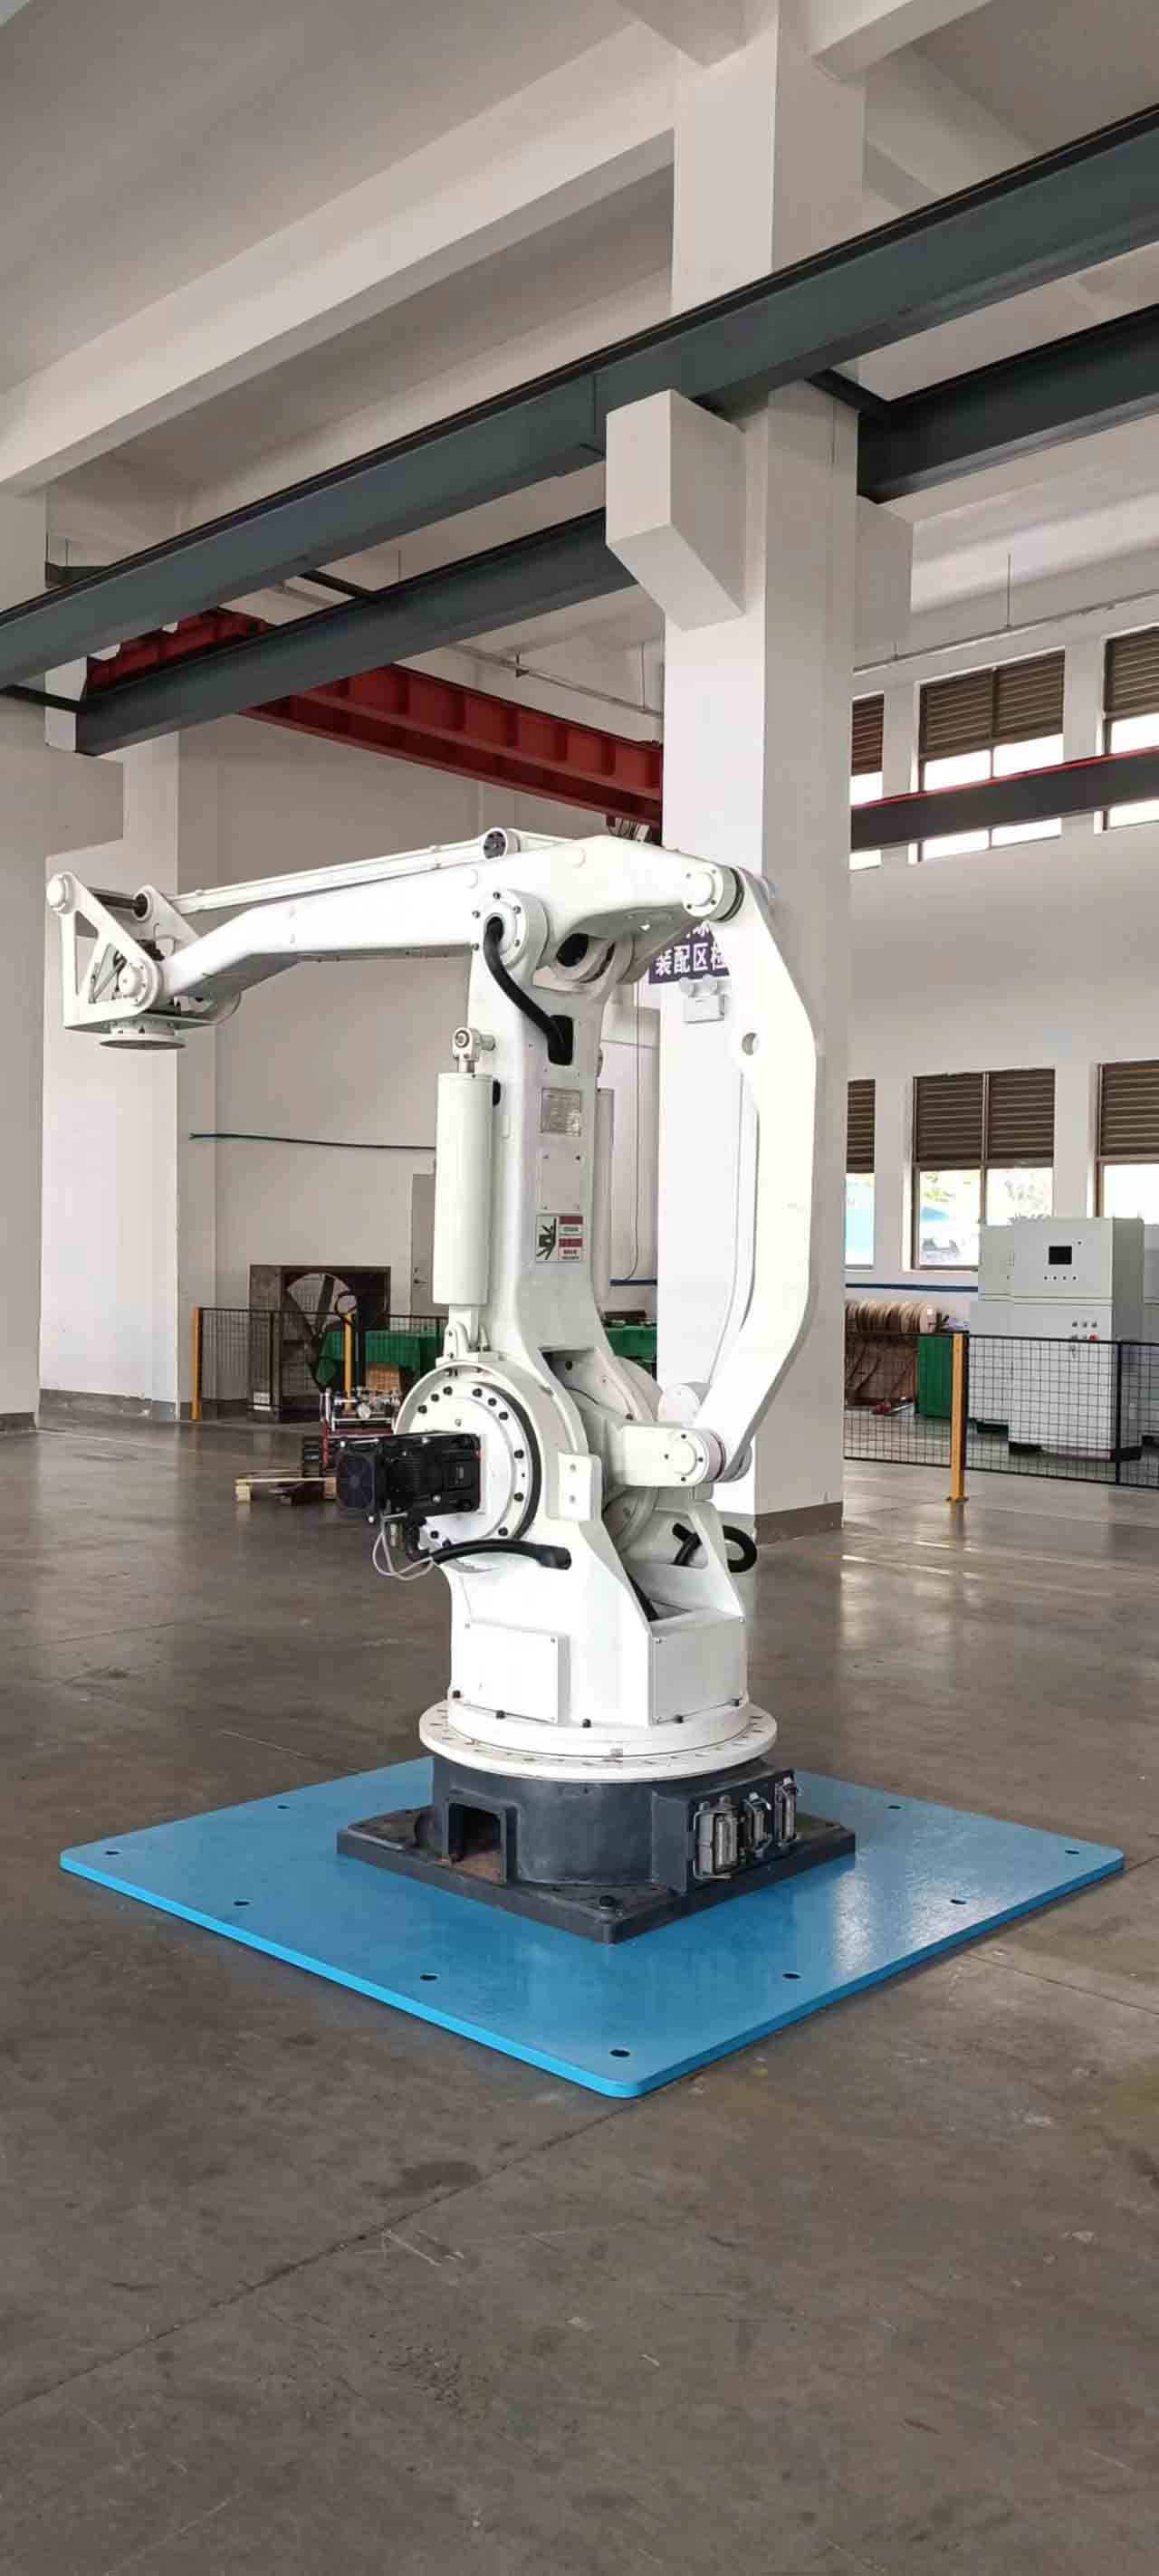 Робот-палетоукладчик грузоподъемностью 200 кг